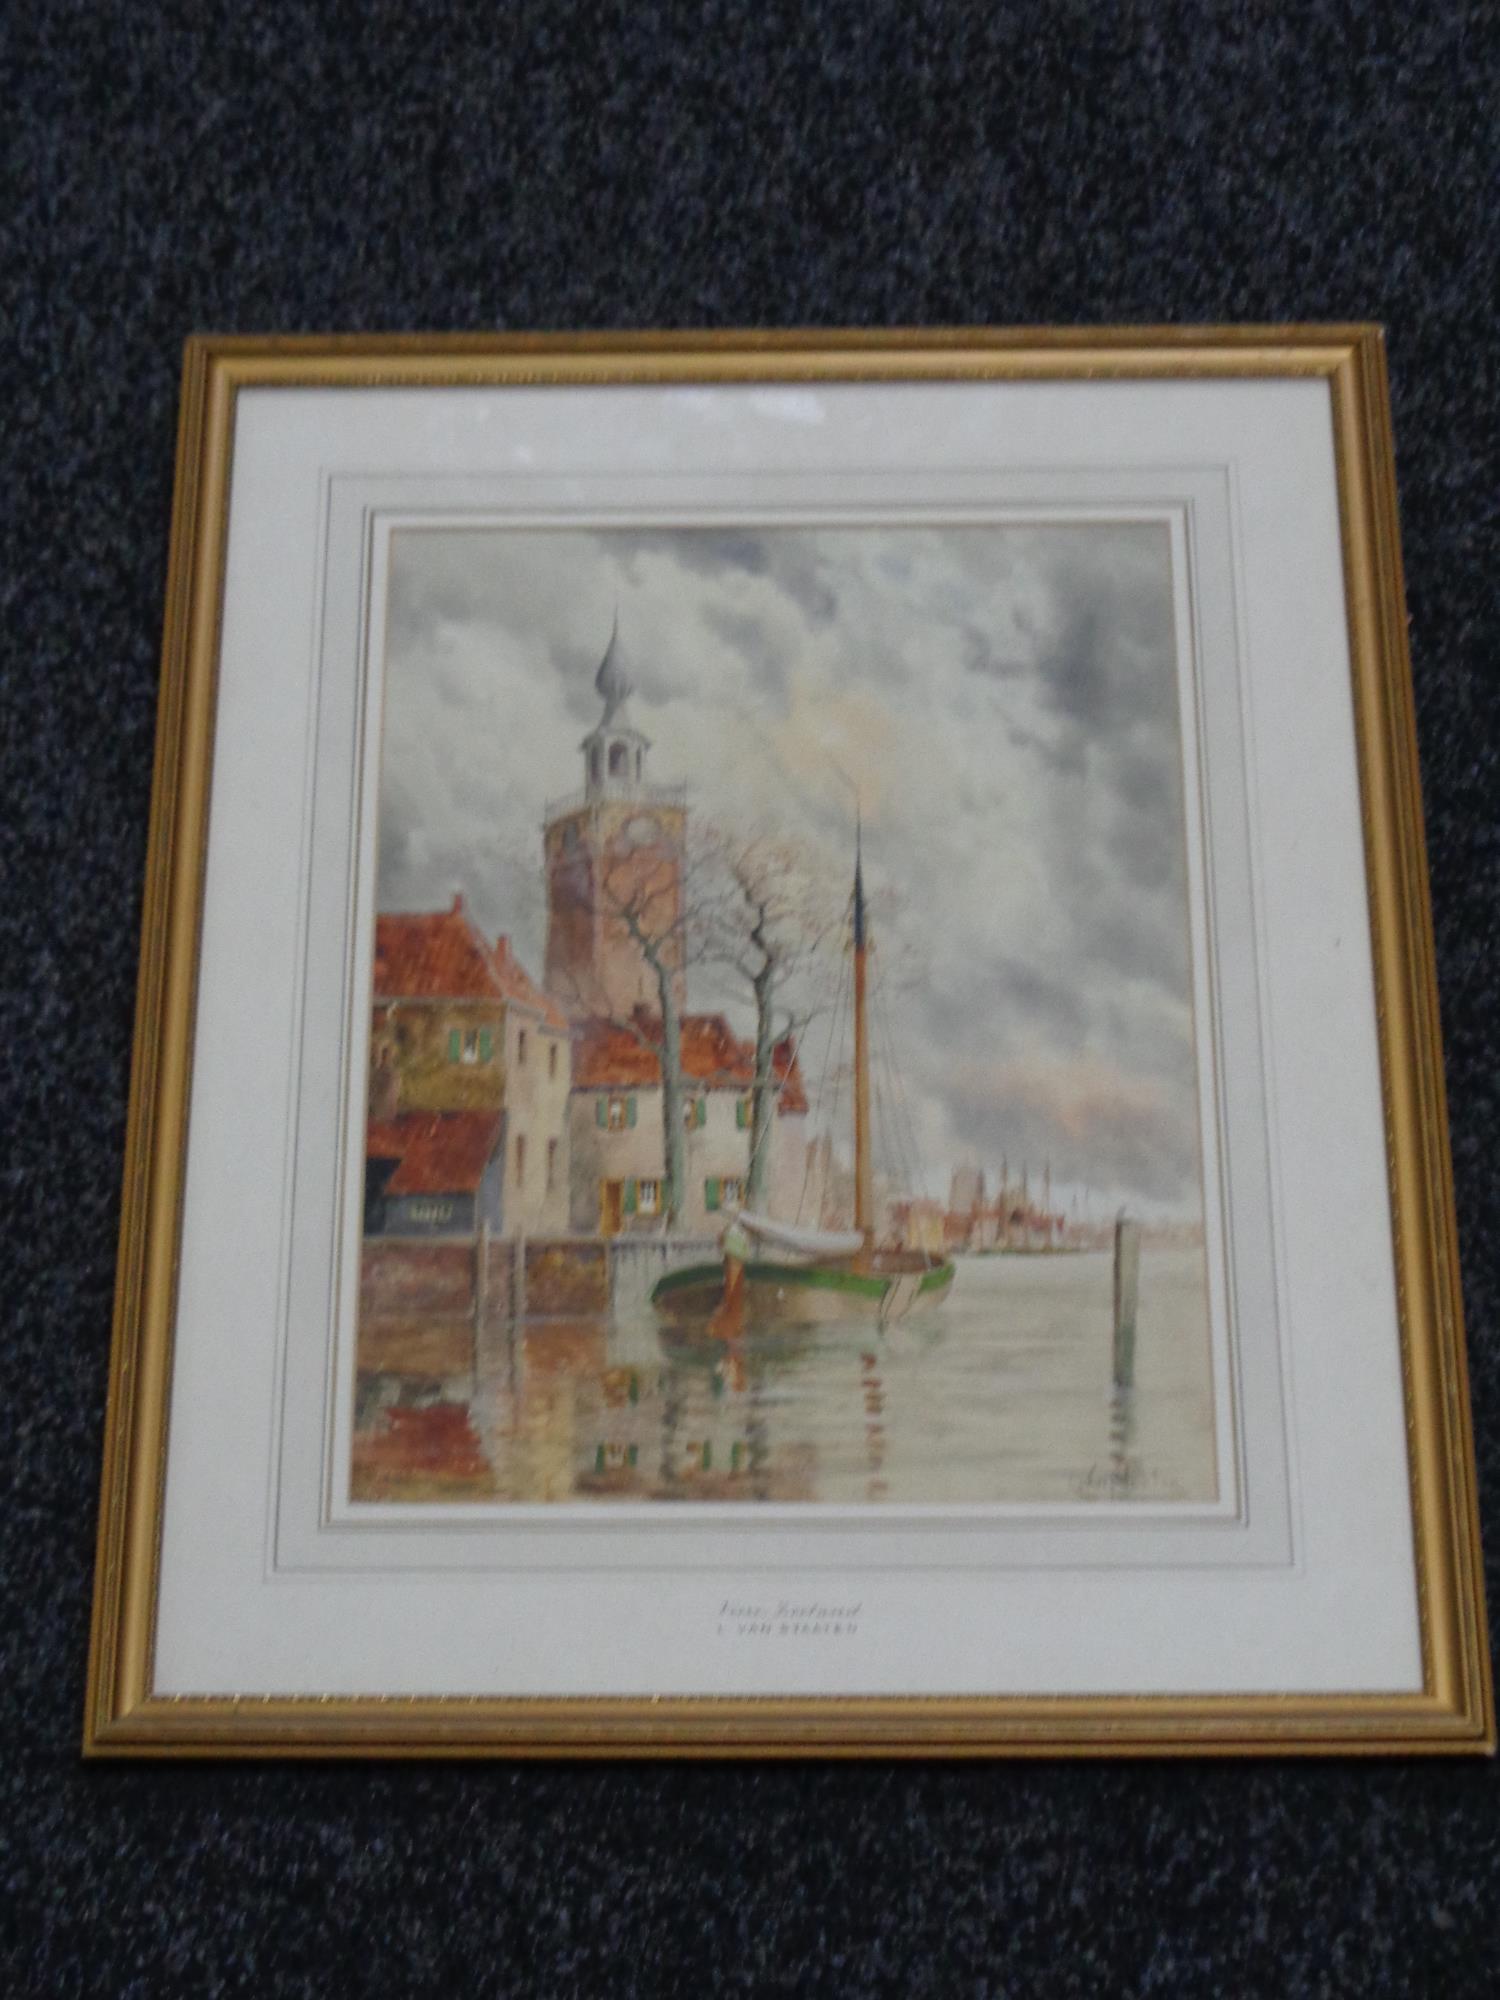 Louis van Staaten (Dutch 1859 - 1924) : Veere Zeeland, watercolour, signed, 40 cm x 31 cm, framed.